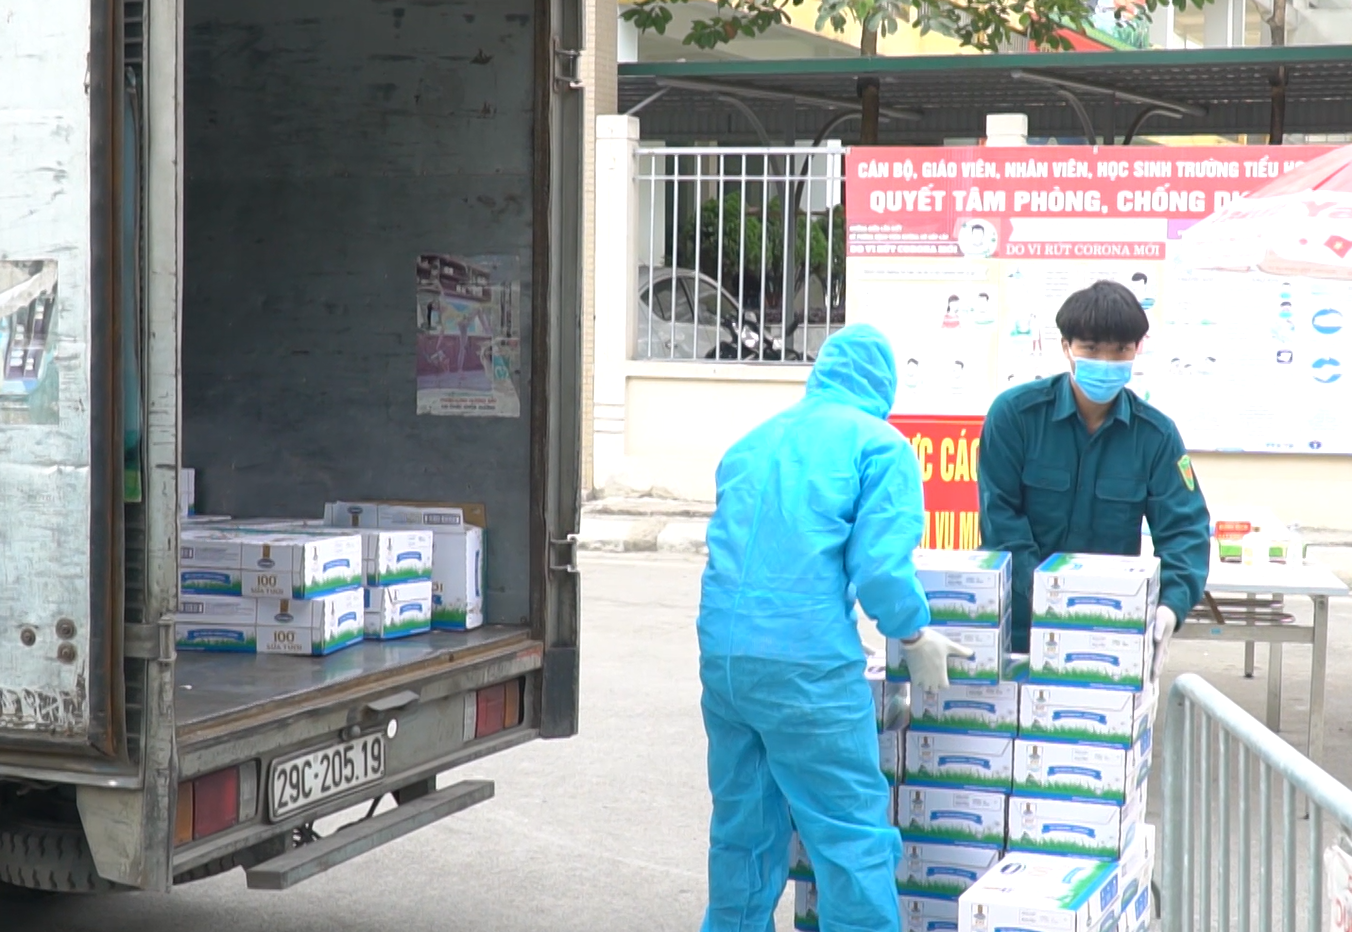 Sáng ngày 05/02, Vinamilk đã trao tặng hơn 120 thùng sữa và nhiều hộp quà tết đến với các em học sinh trường Xuân Phương (Hà Nội).